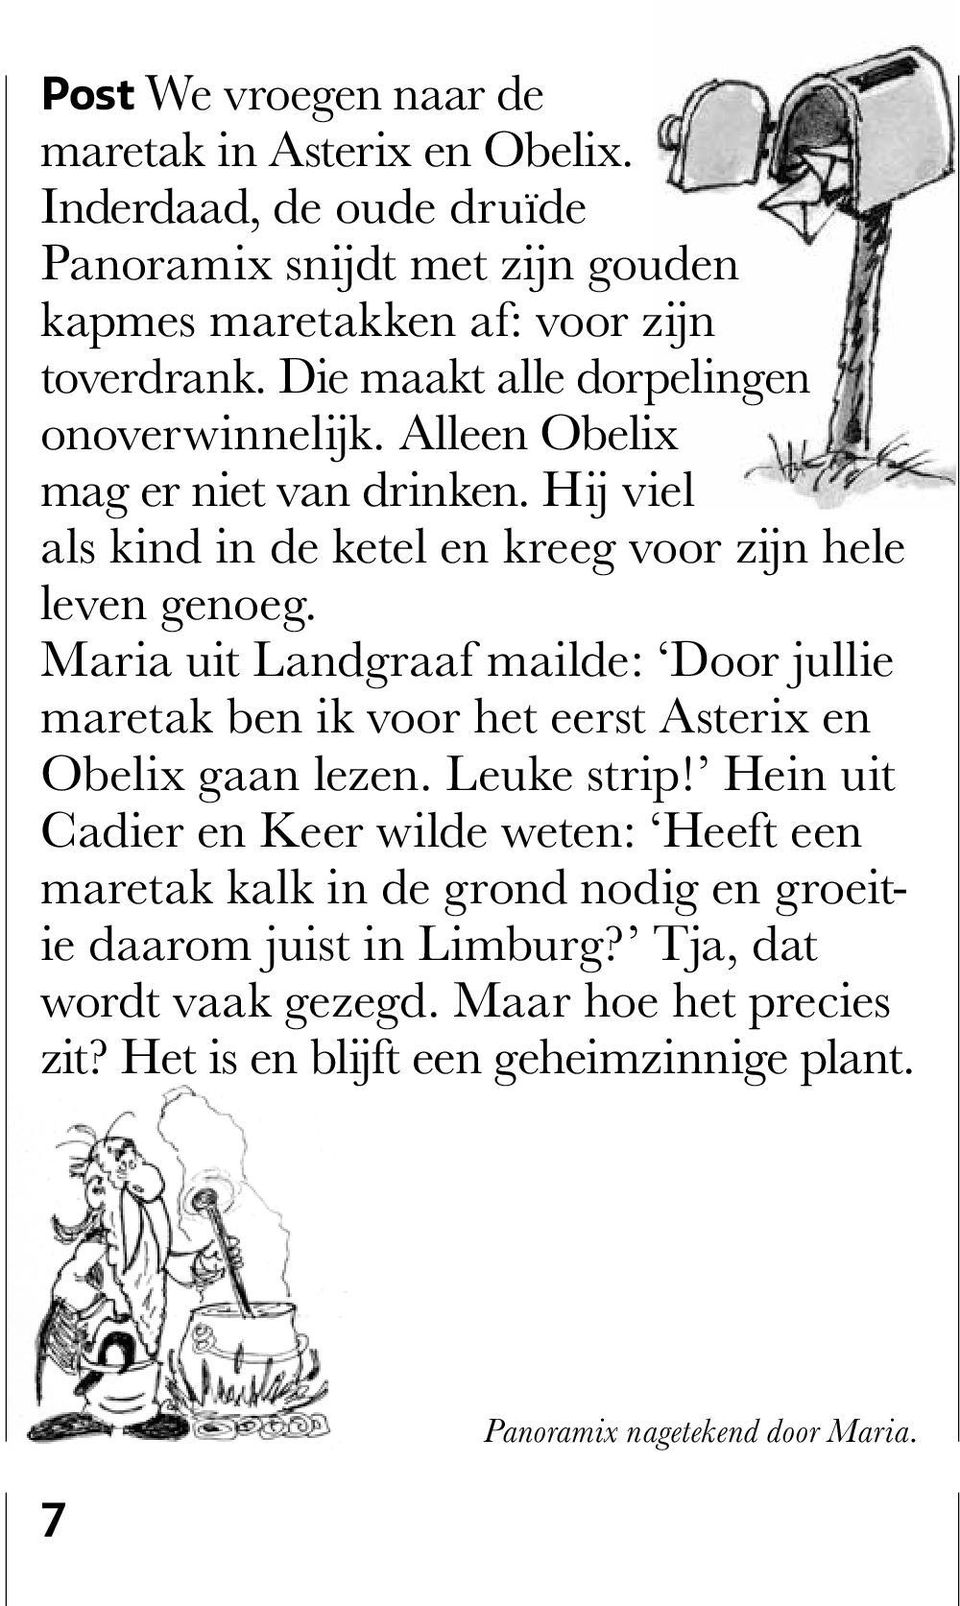 Maria uit Landgraaf mailde: Door jullie maretak ben ik voor het eerst Asterix en Obelix gaan lezen. Leuke strip!